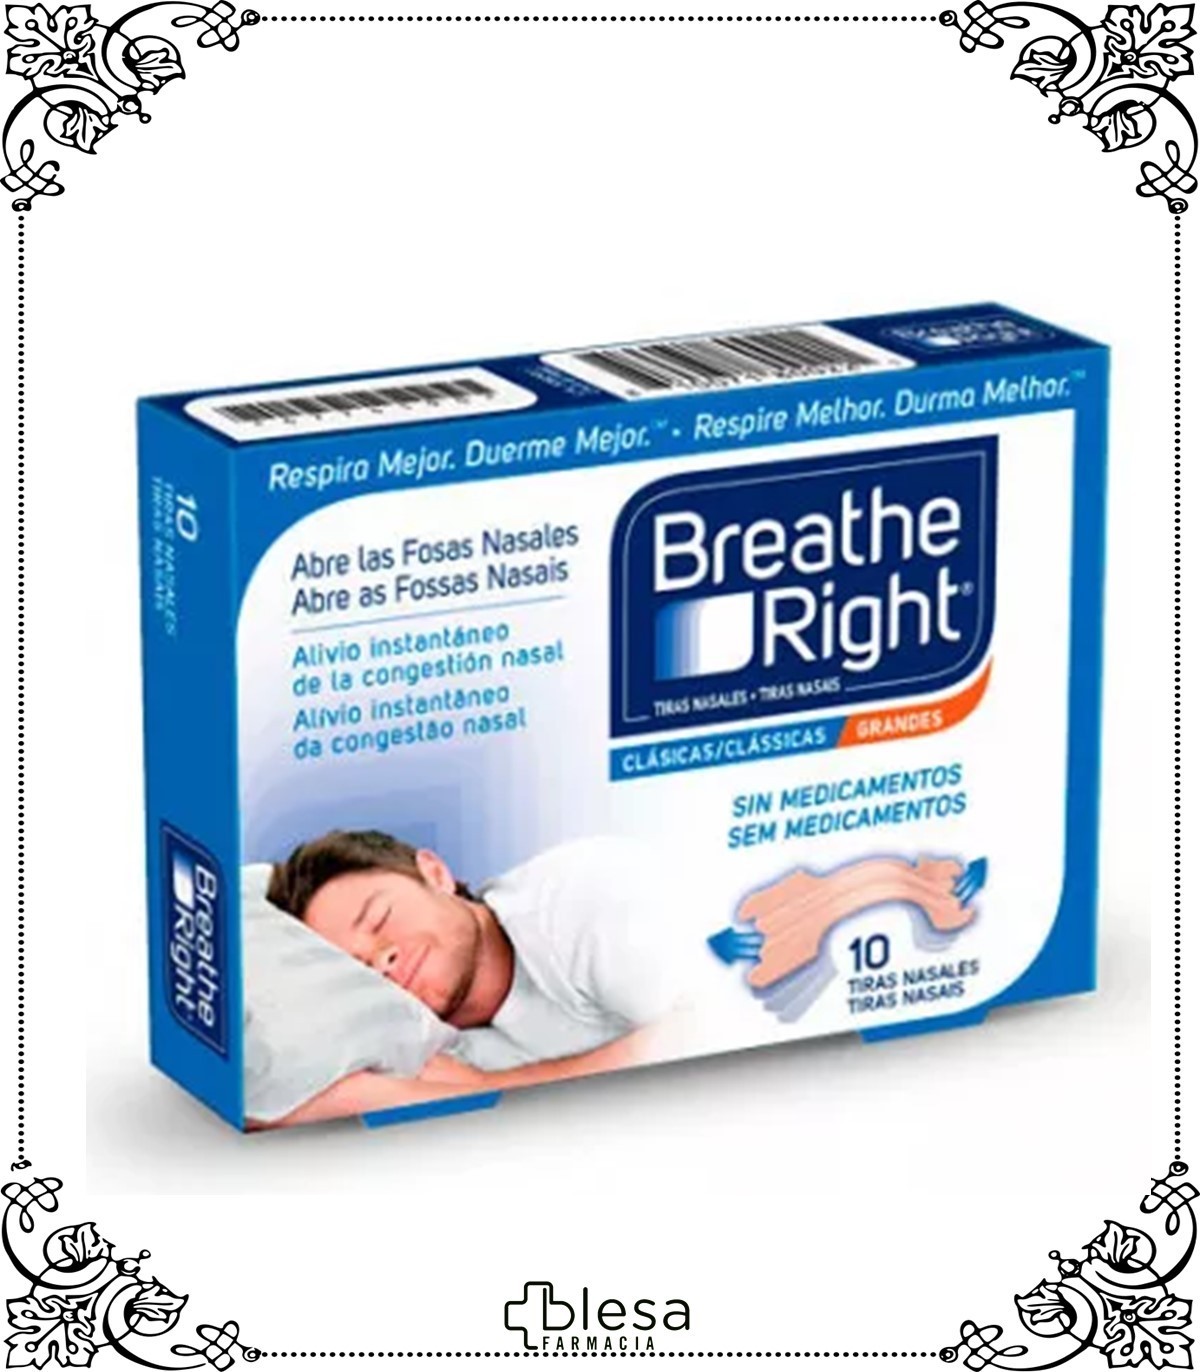 Reva tira nasal breathe grandes piel 10 unidades - Blesa Farmacia